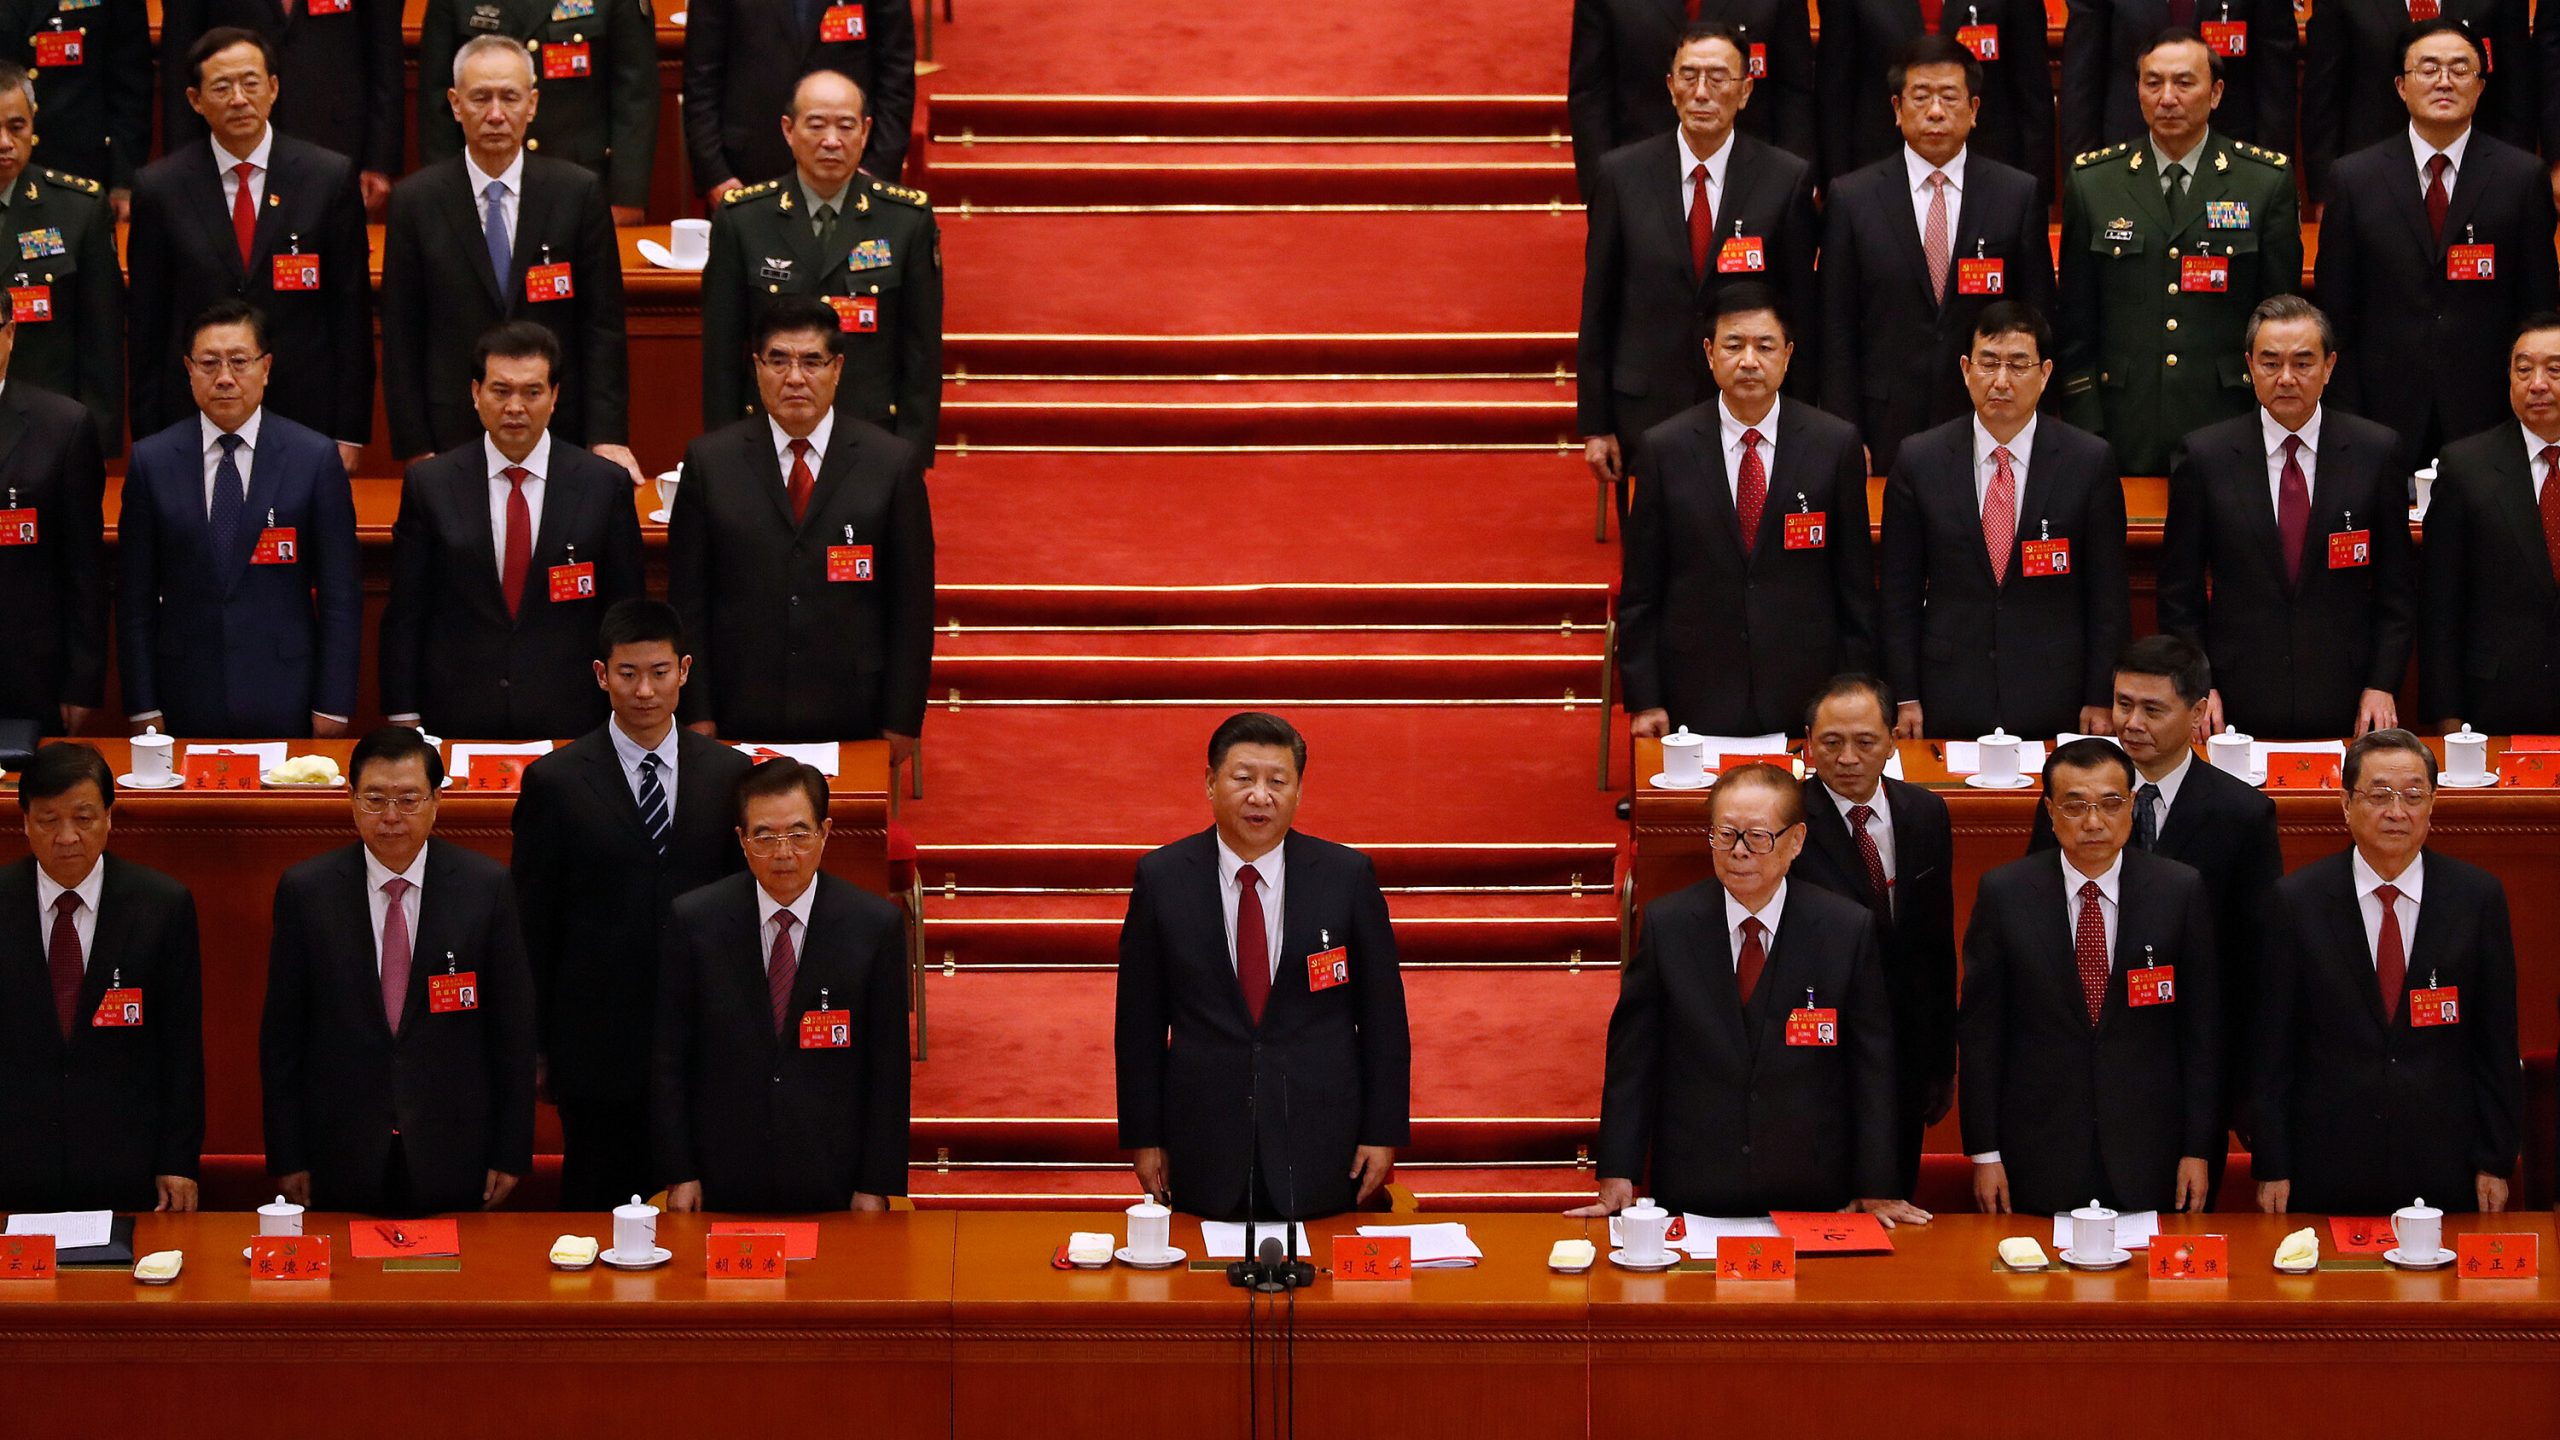 การประชุมใหญ่ของจีนในสัปดาห์นี้มีความหมายต่อเศรษฐกิจอย่างไร